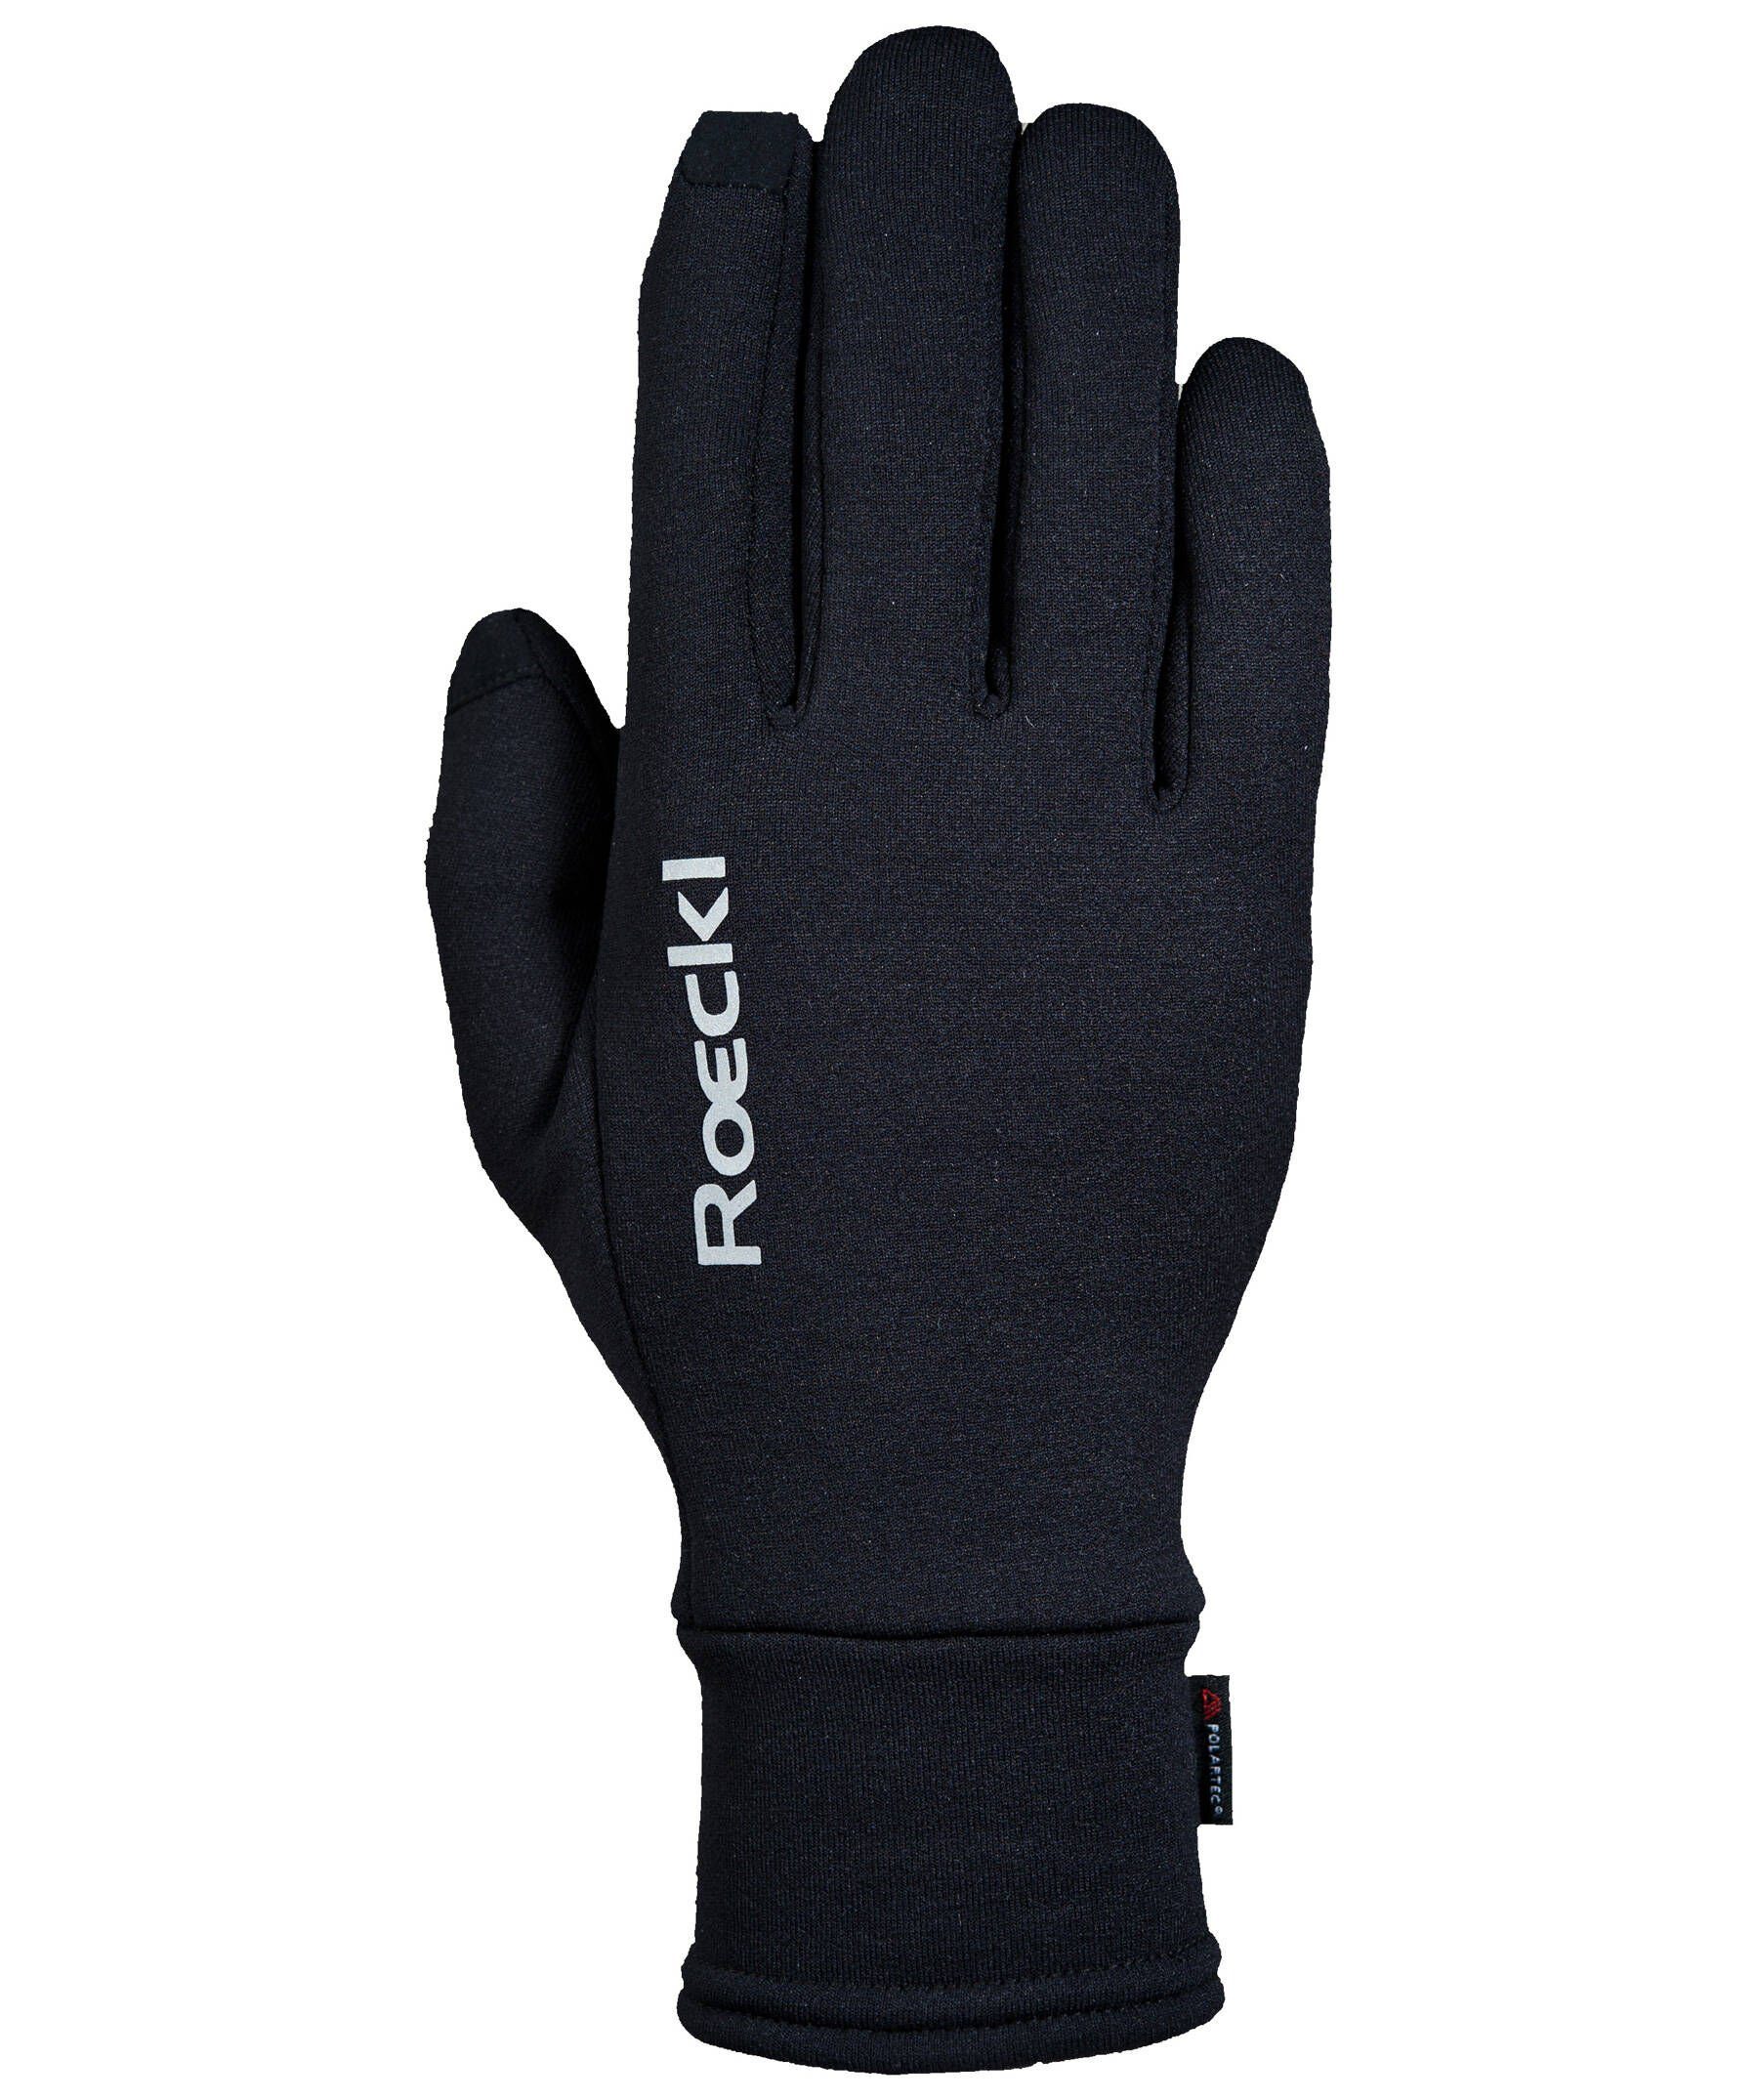 Roeckl SPORTS Multisporthandschuhe Outdoor-Handschuh "Kailash" schwarz (200)